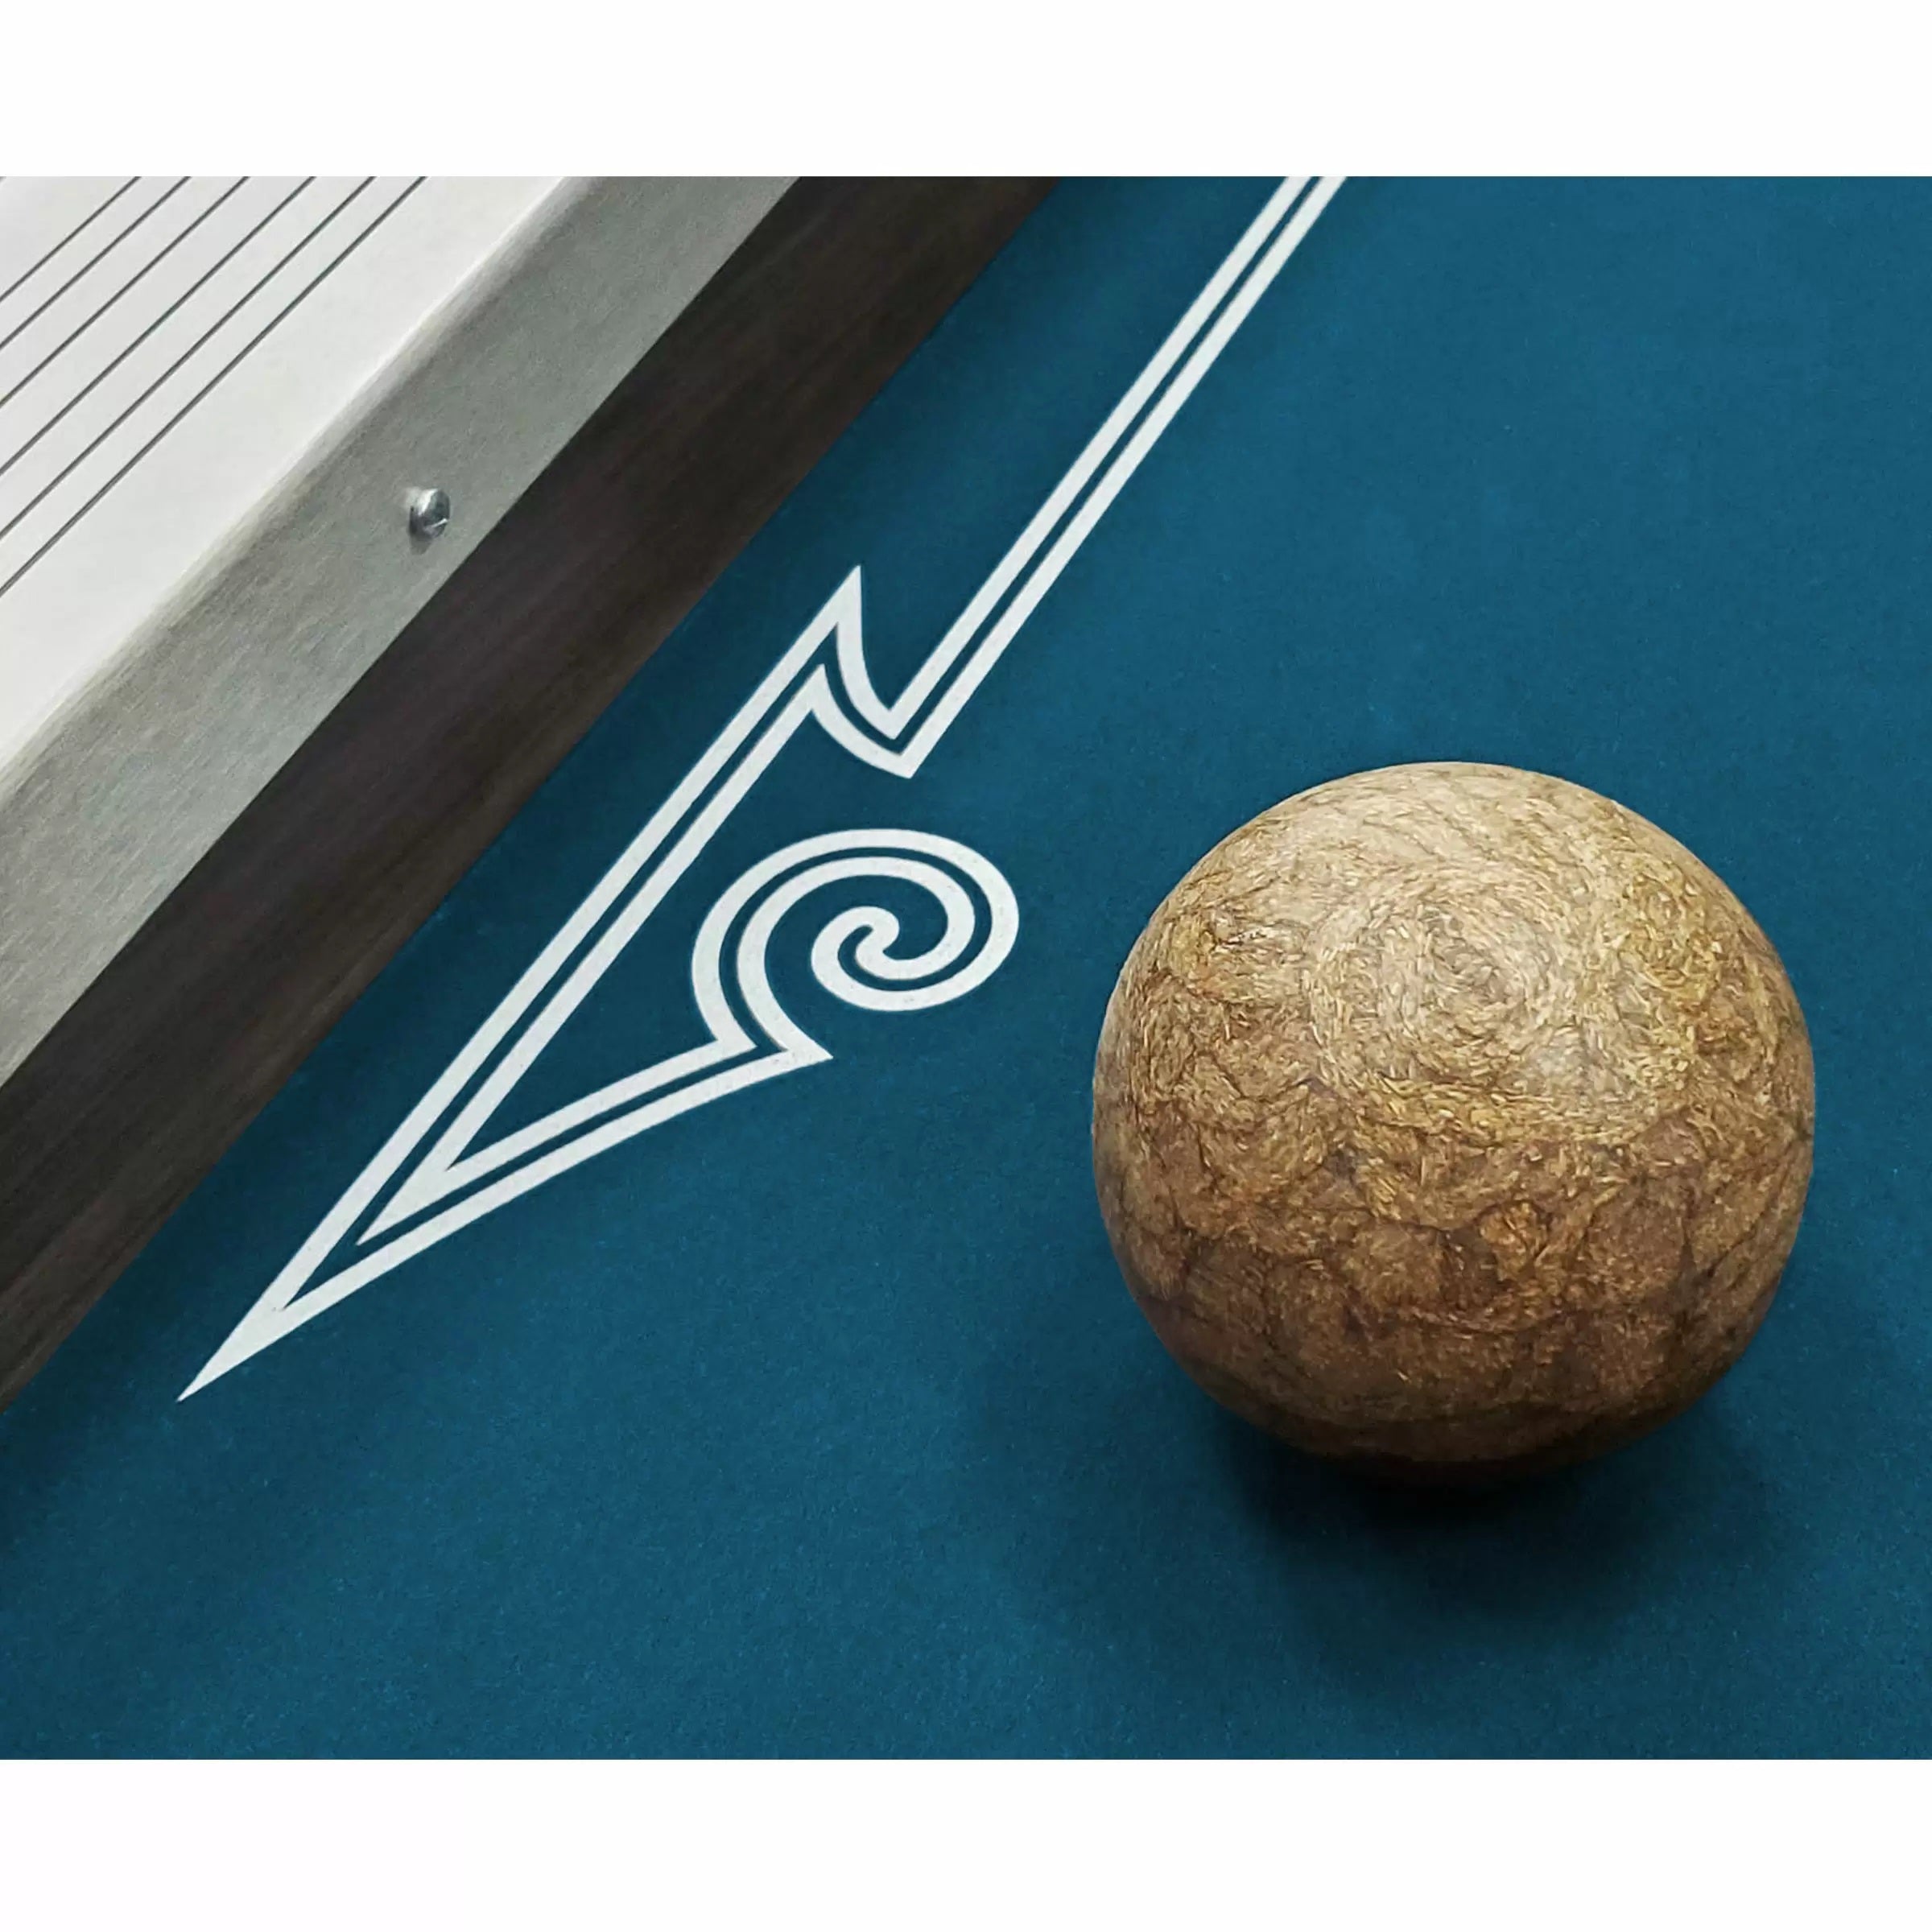 Imperial USA Home Arcade Premium Skee ball with Indigo Cork Ball